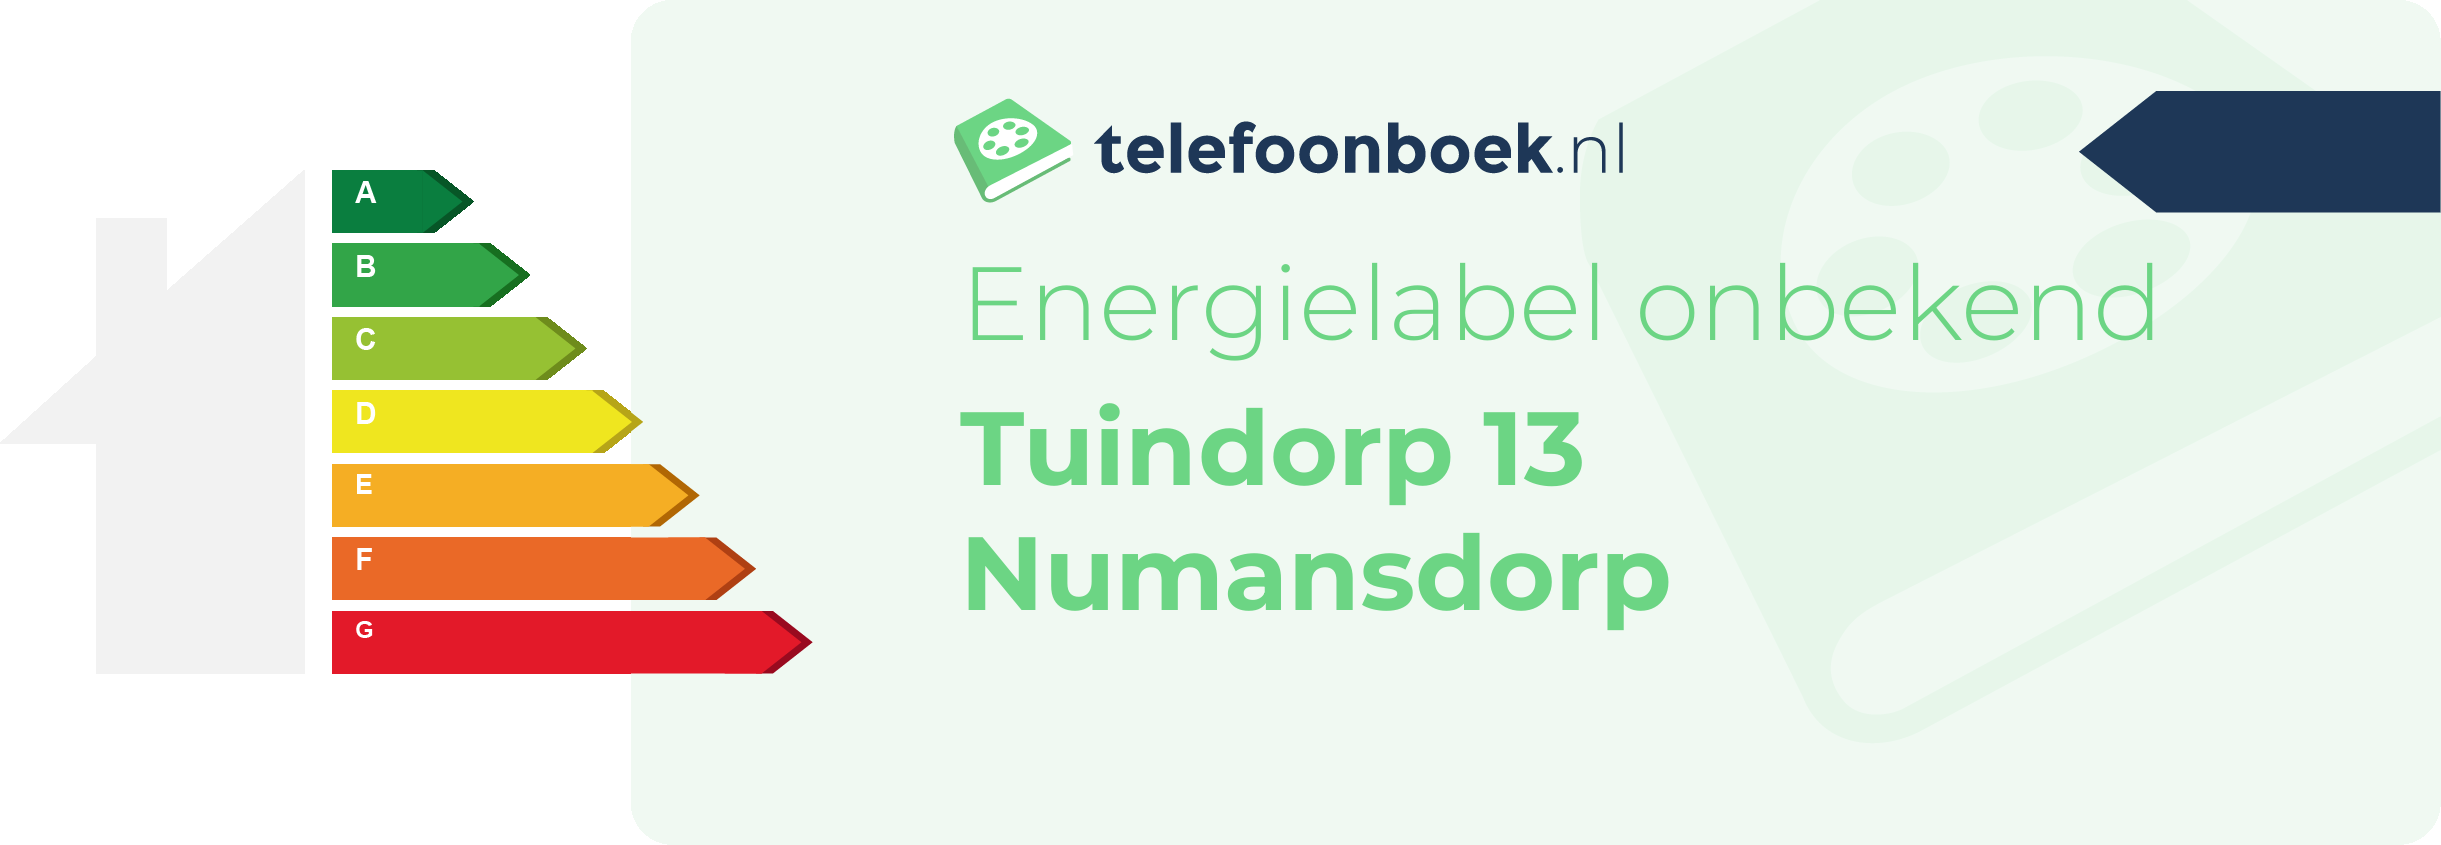 Energielabel Tuindorp 13 Numansdorp